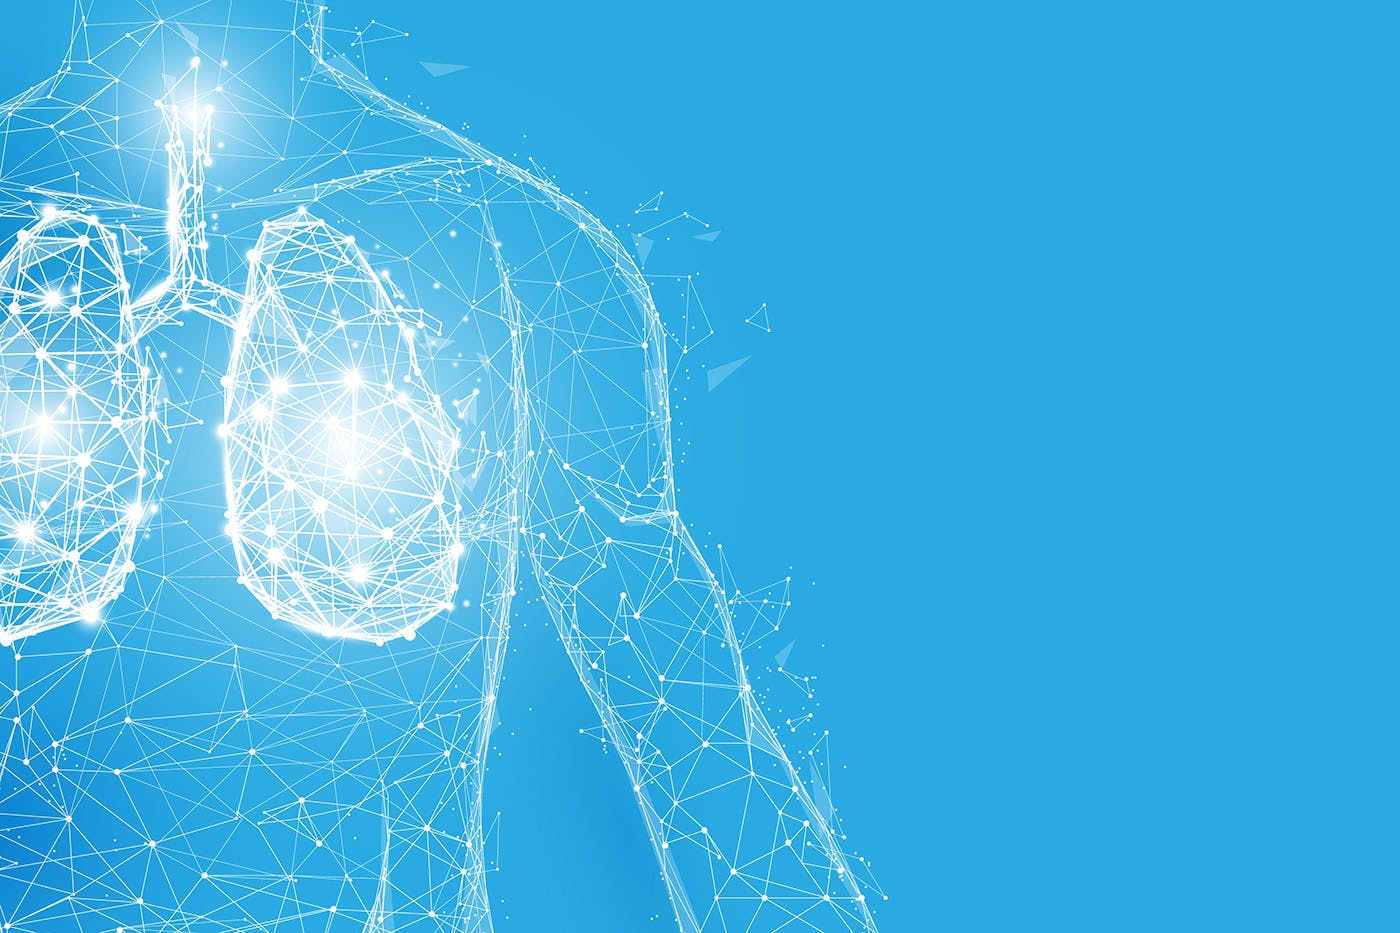 Human body entourage effect illustration with blue background